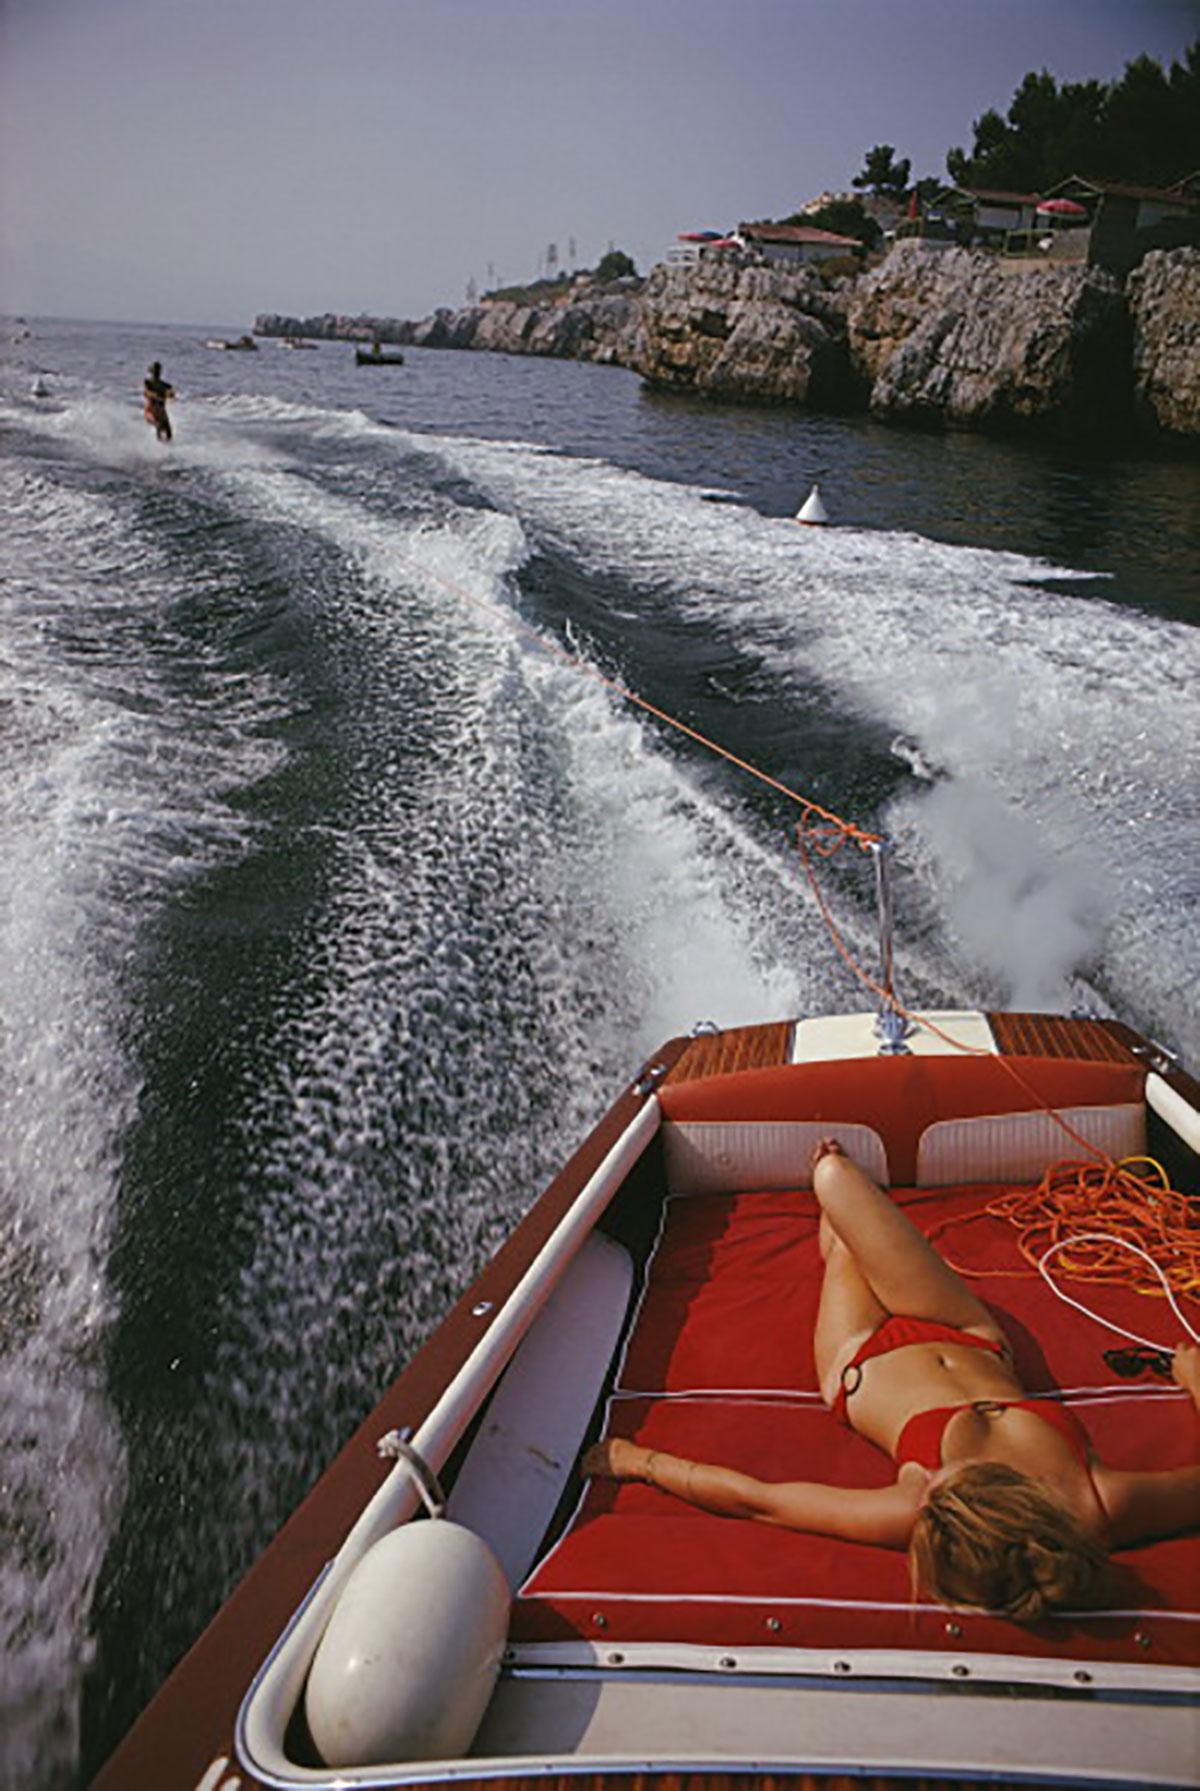 Schlanke Aarons
Freizeit in Antibes
1964 (später gedruckt)
C Druck 
Nachlassgestempelte und nummerierte Auflage von 150 Stück 
mit Echtheitszertifikat

Eine Frau sonnt sich in einem Motorboot, das einen Wasserskifahrer zieht, im Meer vor dem Hotel